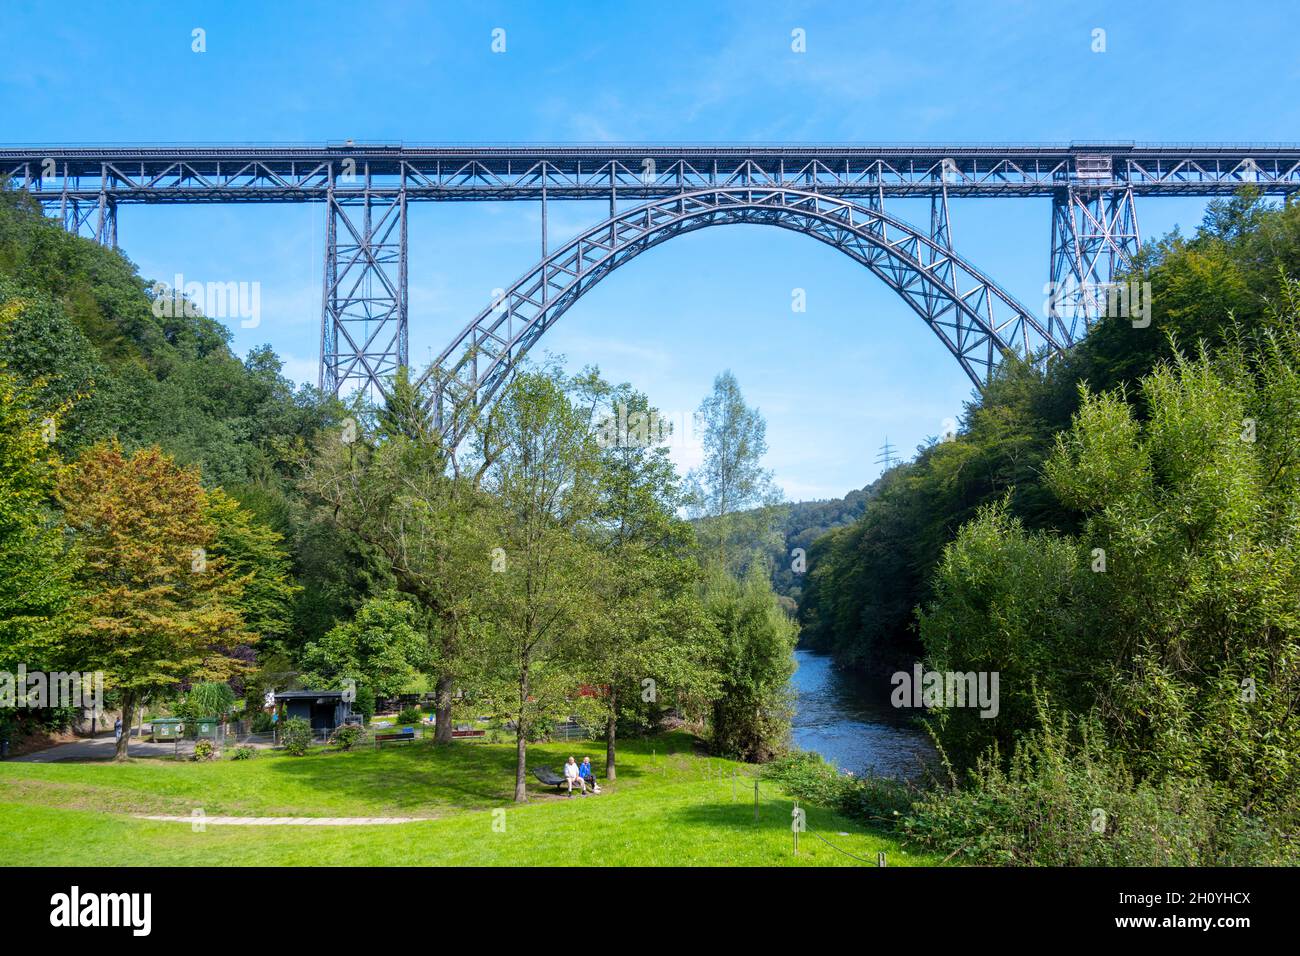 Deutschland, Nordrhein-Westfalen, Solingen, Die Müngstener Brücke ist die höchste Eisenbahnbrücke Deutschlands. Sie überspannt zweigleisig zwischen de Stock Photo